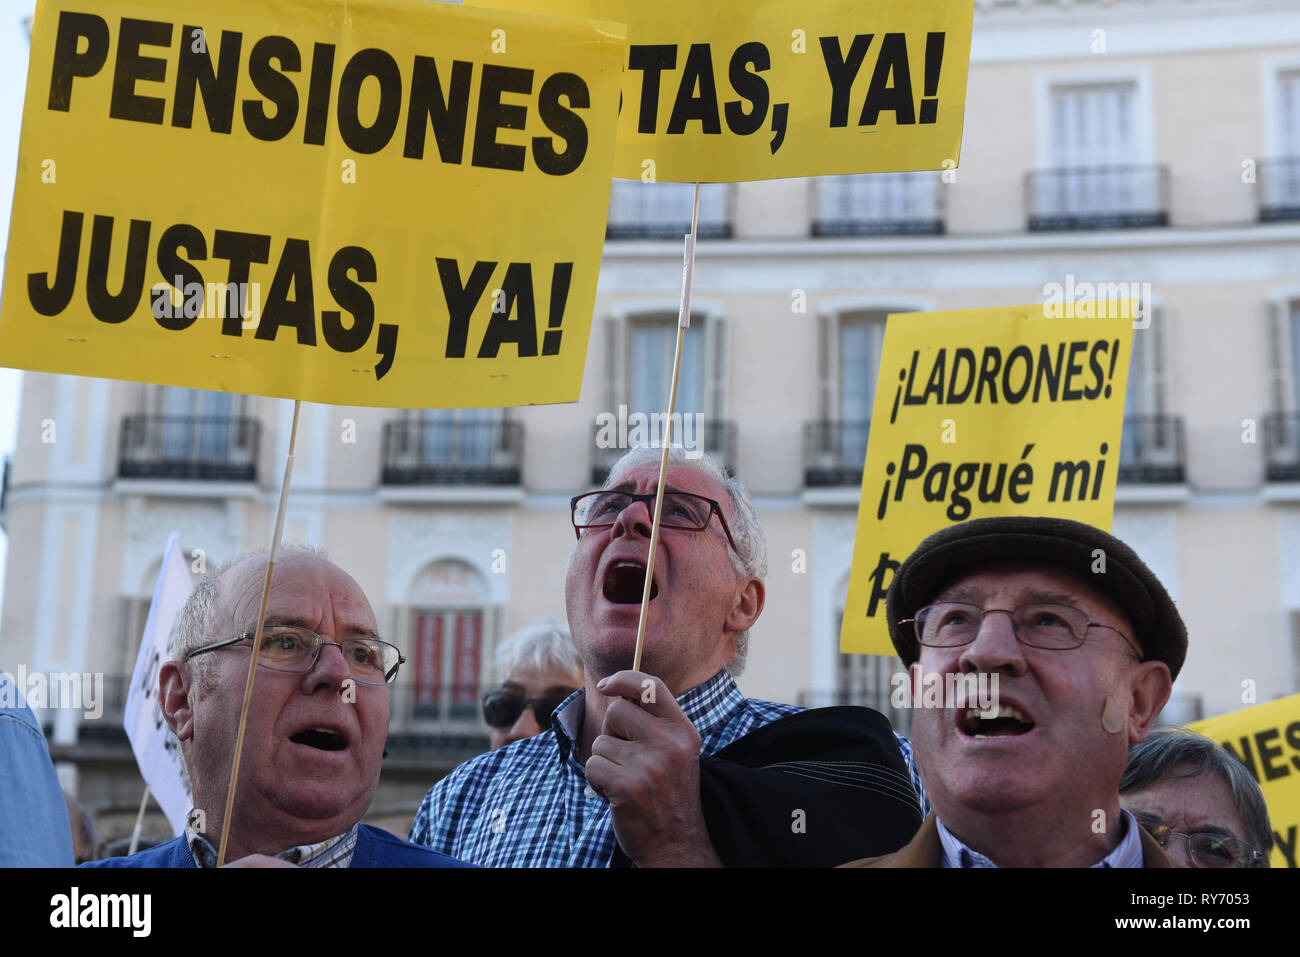 Les retraités ont vu la tenue des pancartes tout en criant des slogans pendant la manifestation. Près de 300 retraités se sont rassemblés à la Puerta del Sol à Madrid, le gouvernement espagnol exigeant une augmentation de leurs pensions et de protestation contre les coupures dans les services publics. Banque D'Images